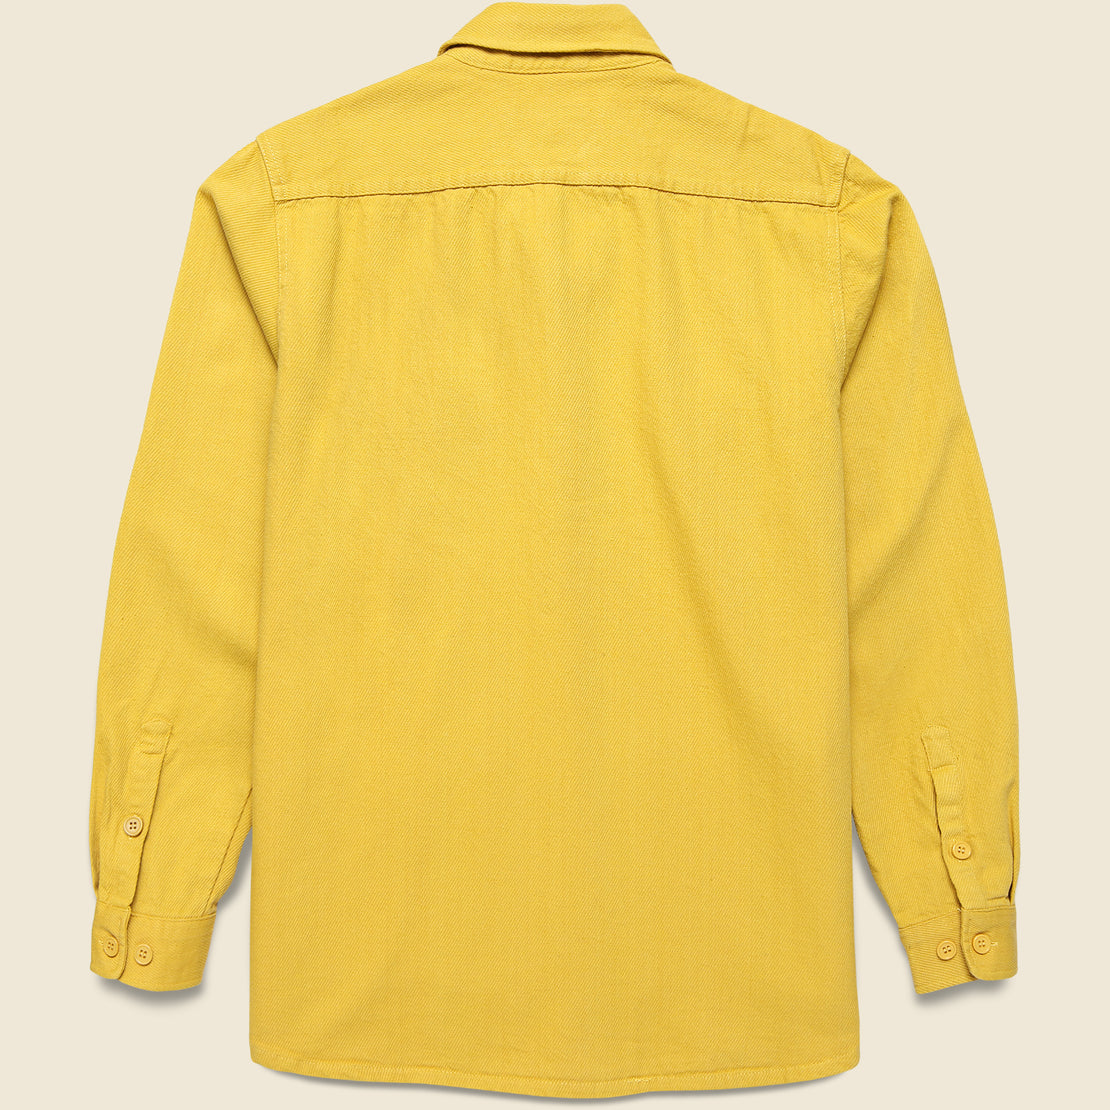 Cavalry Twill Workshirt - Sunflower - Schott - STAG Provisions - Outerwear - Shirt Jacket